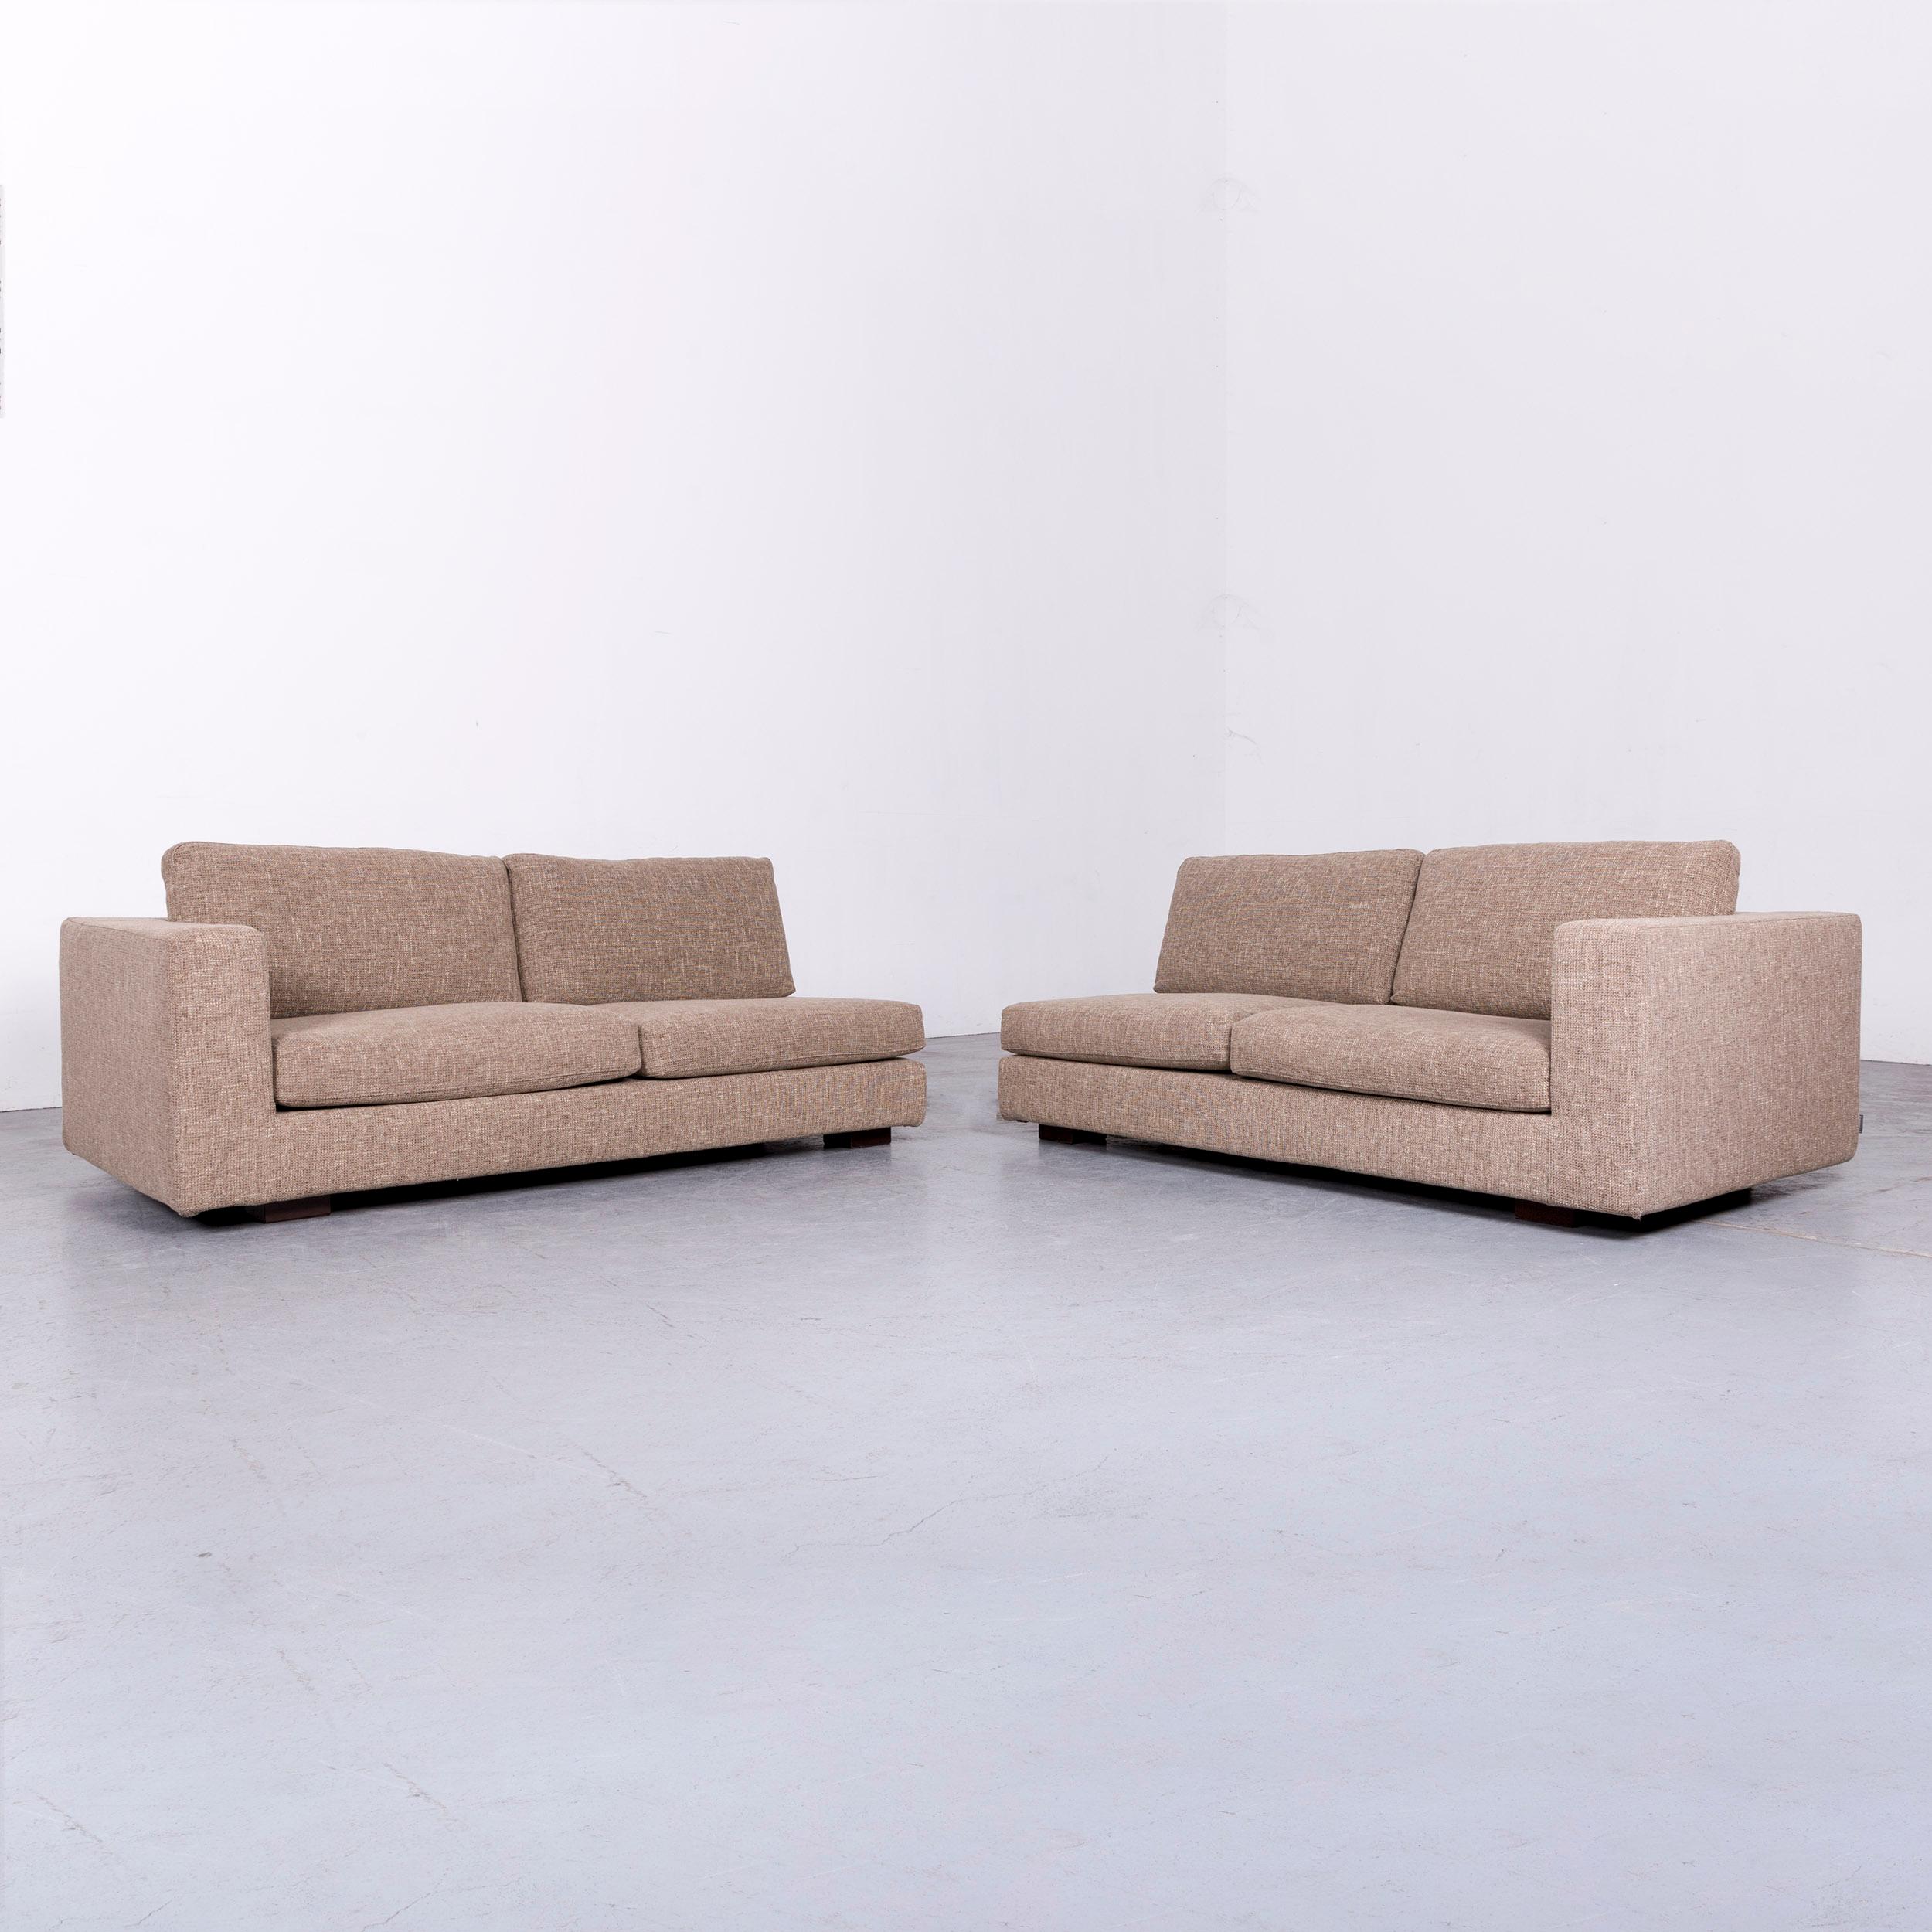 Italian Minotti Hilton Designer Fabric Sofa Brown Corner Couch